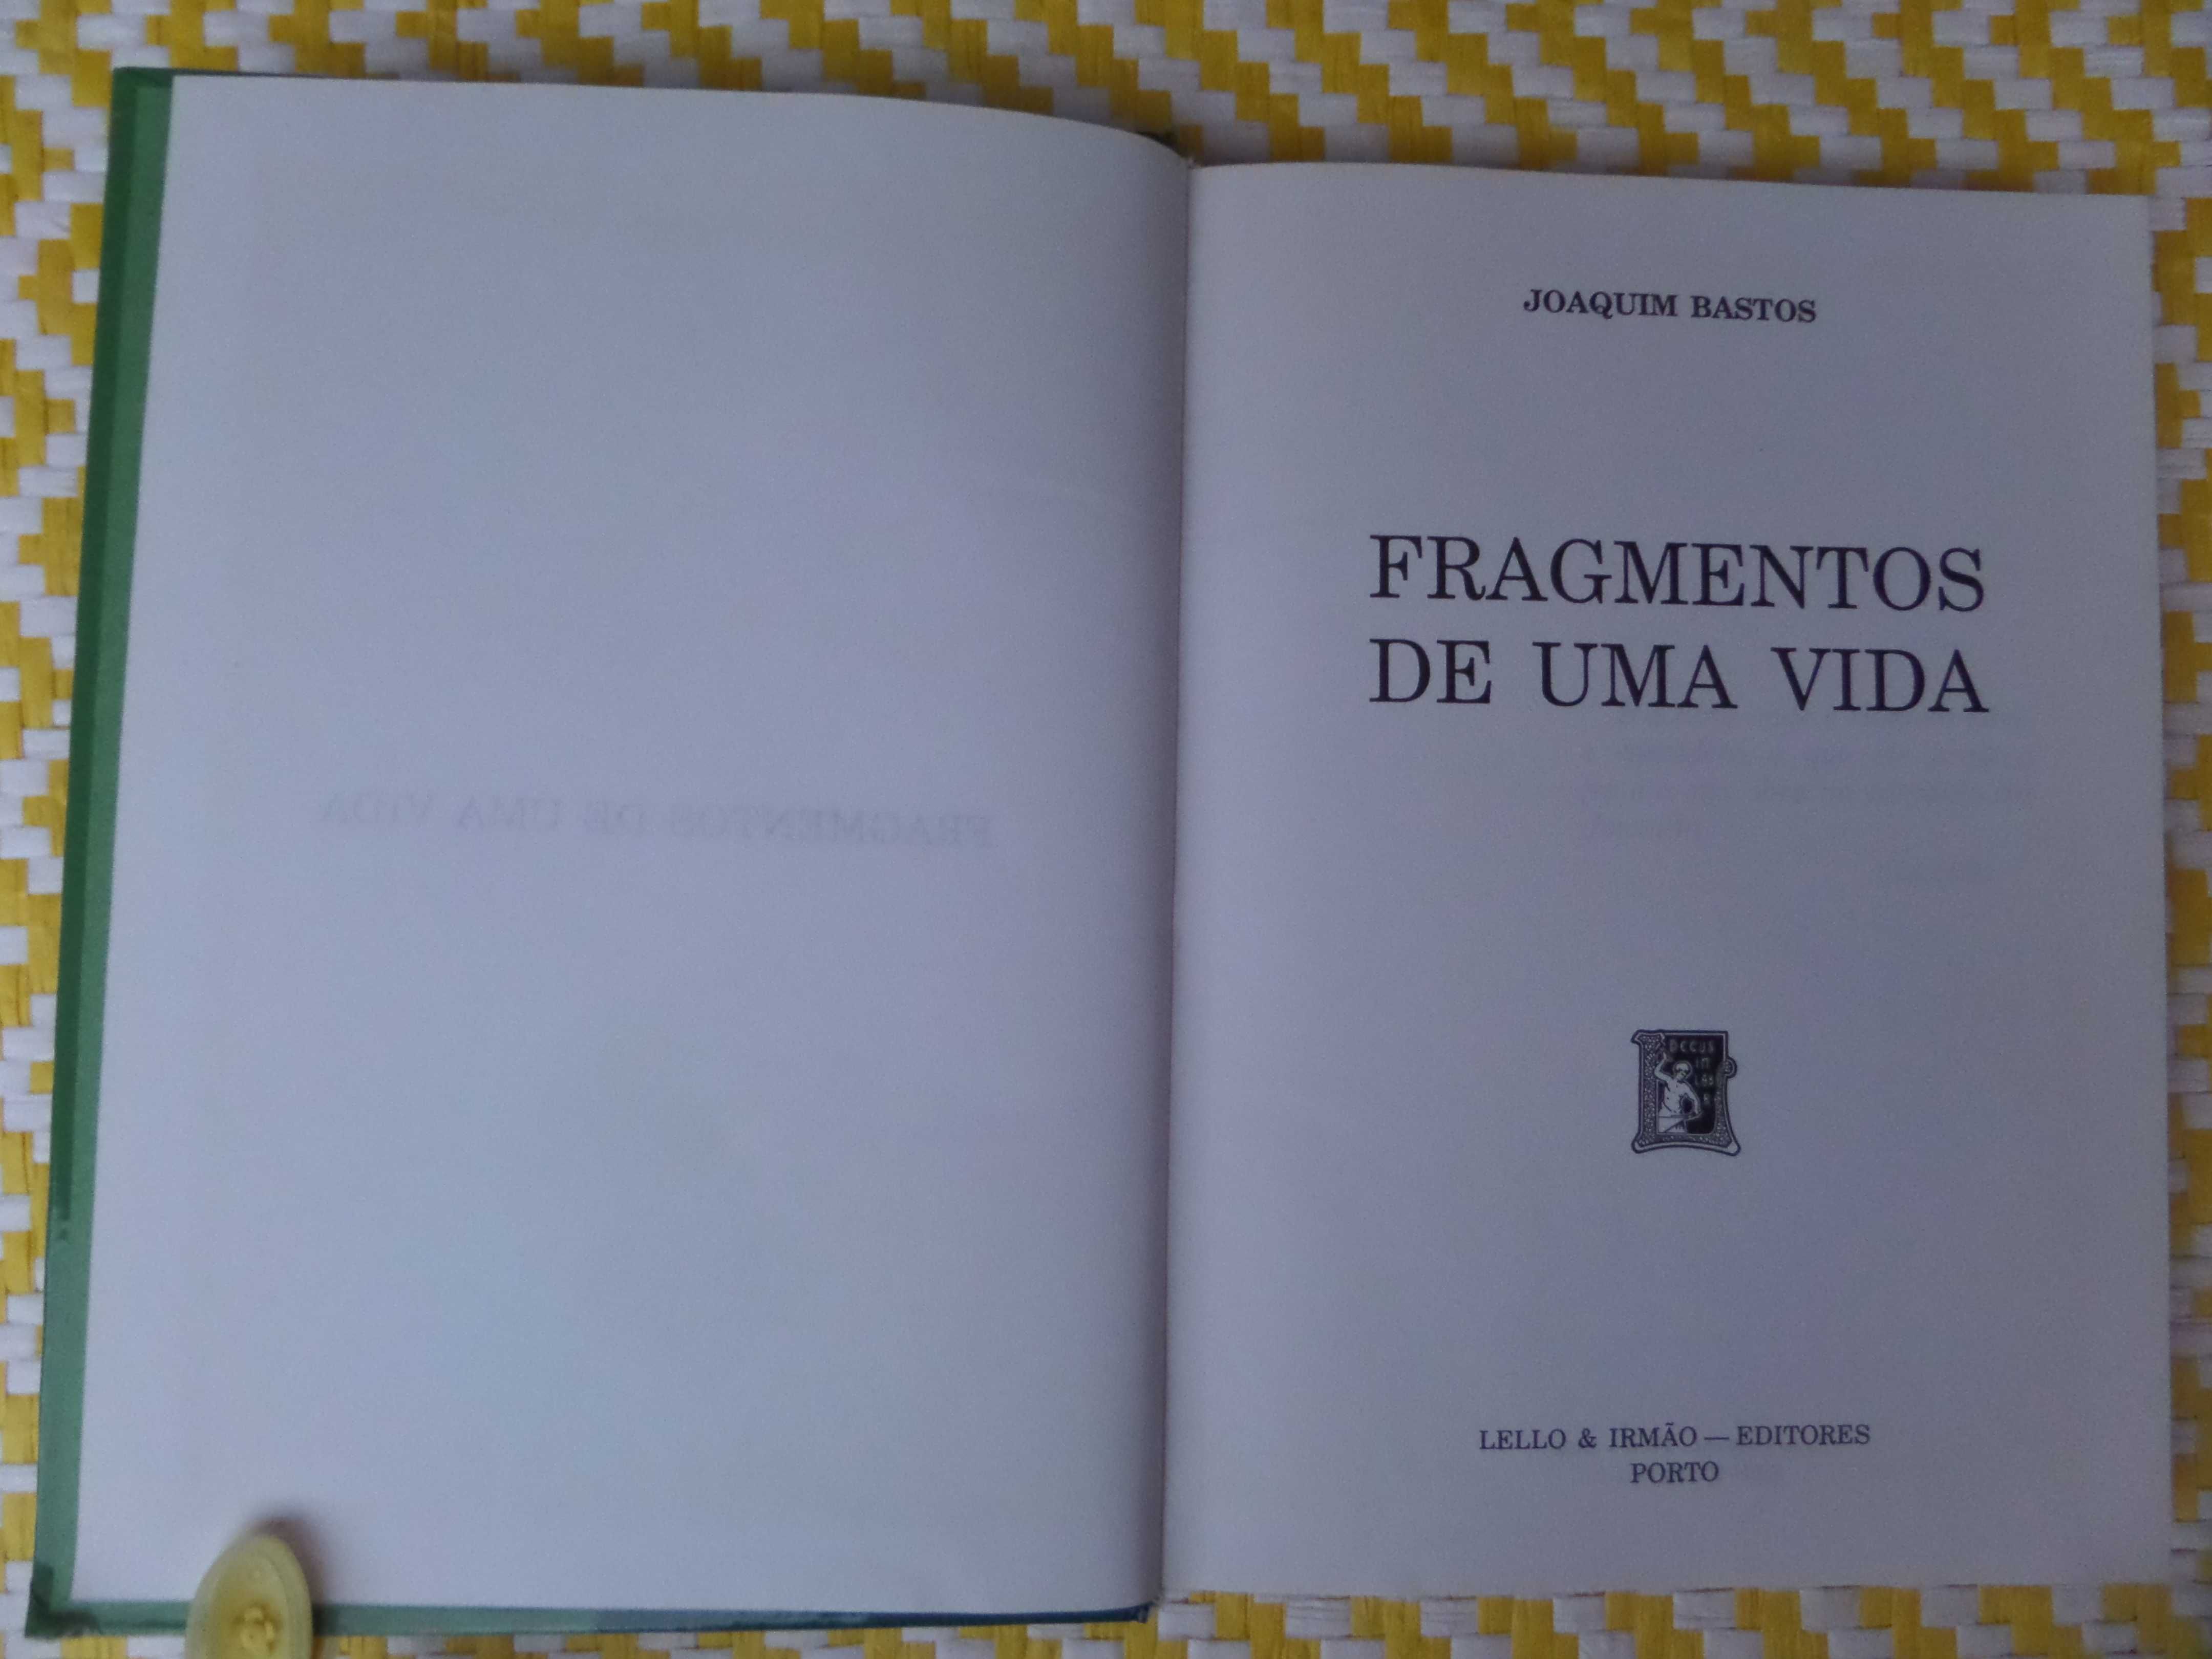 FRAGMENTOS DE UMA VIDA
Autor - Joaquim Bastos